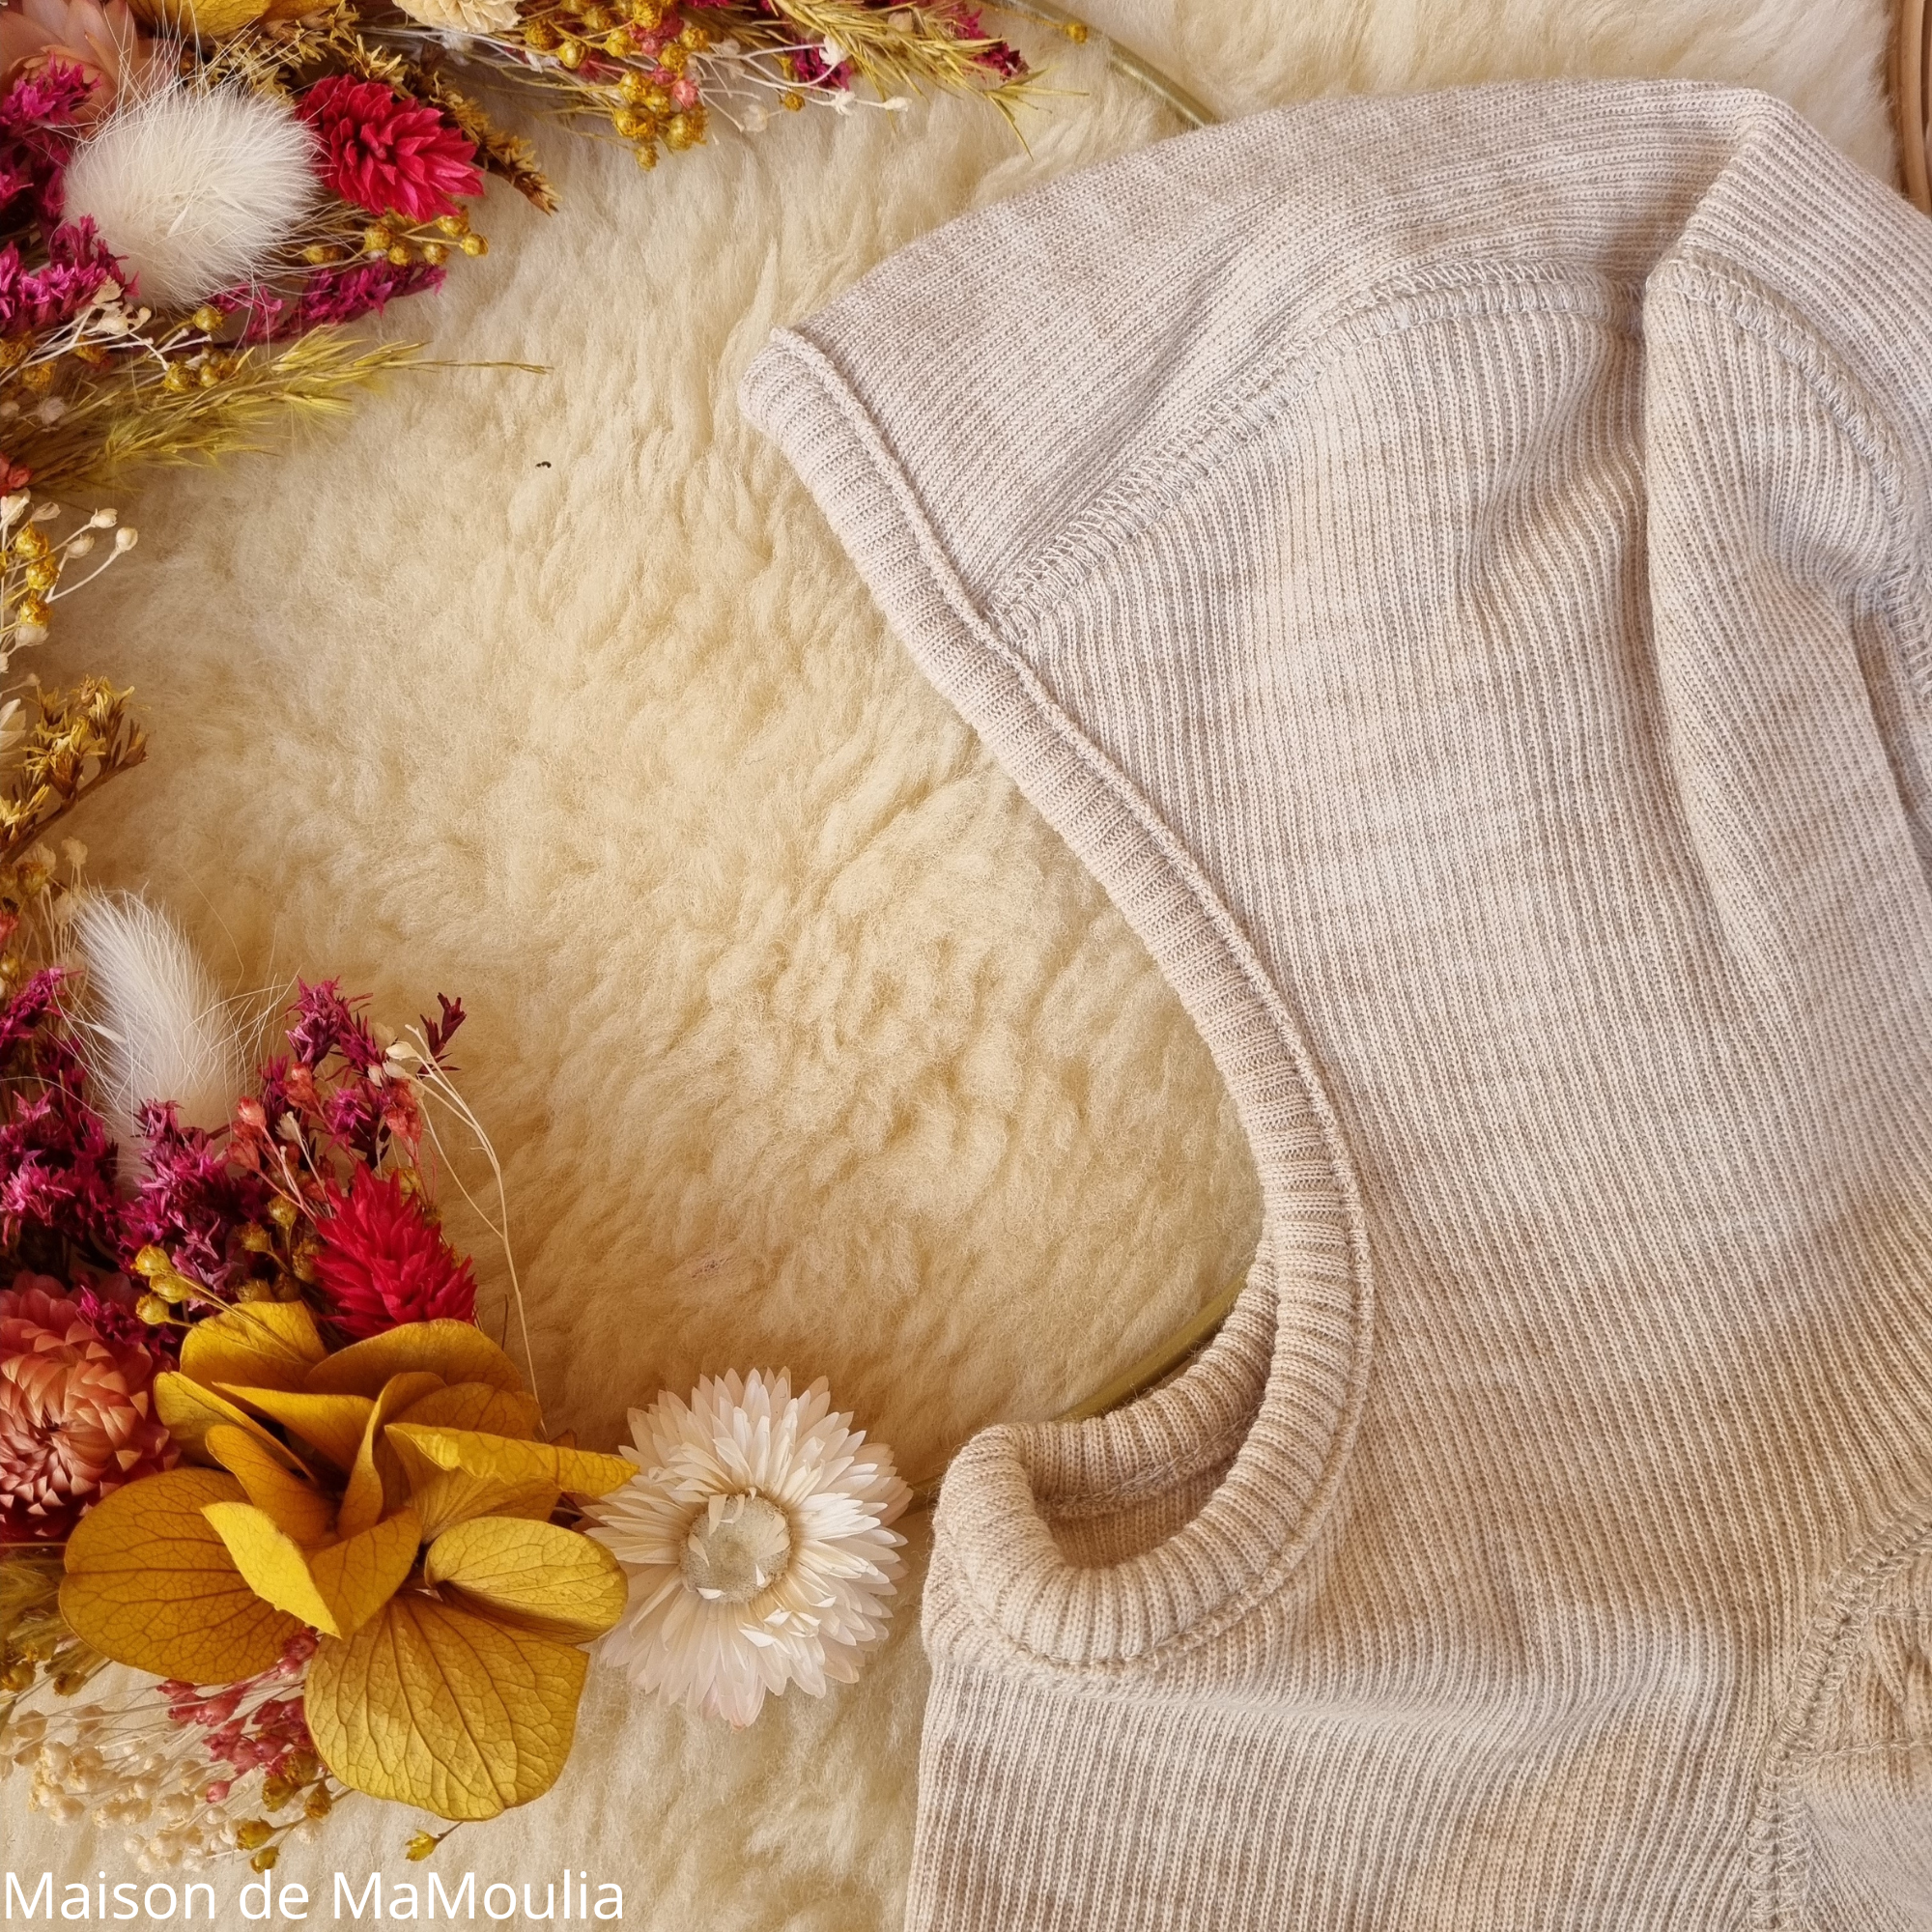 Cagoule lapin en laine mérinos ManyMonths bébé et enfant